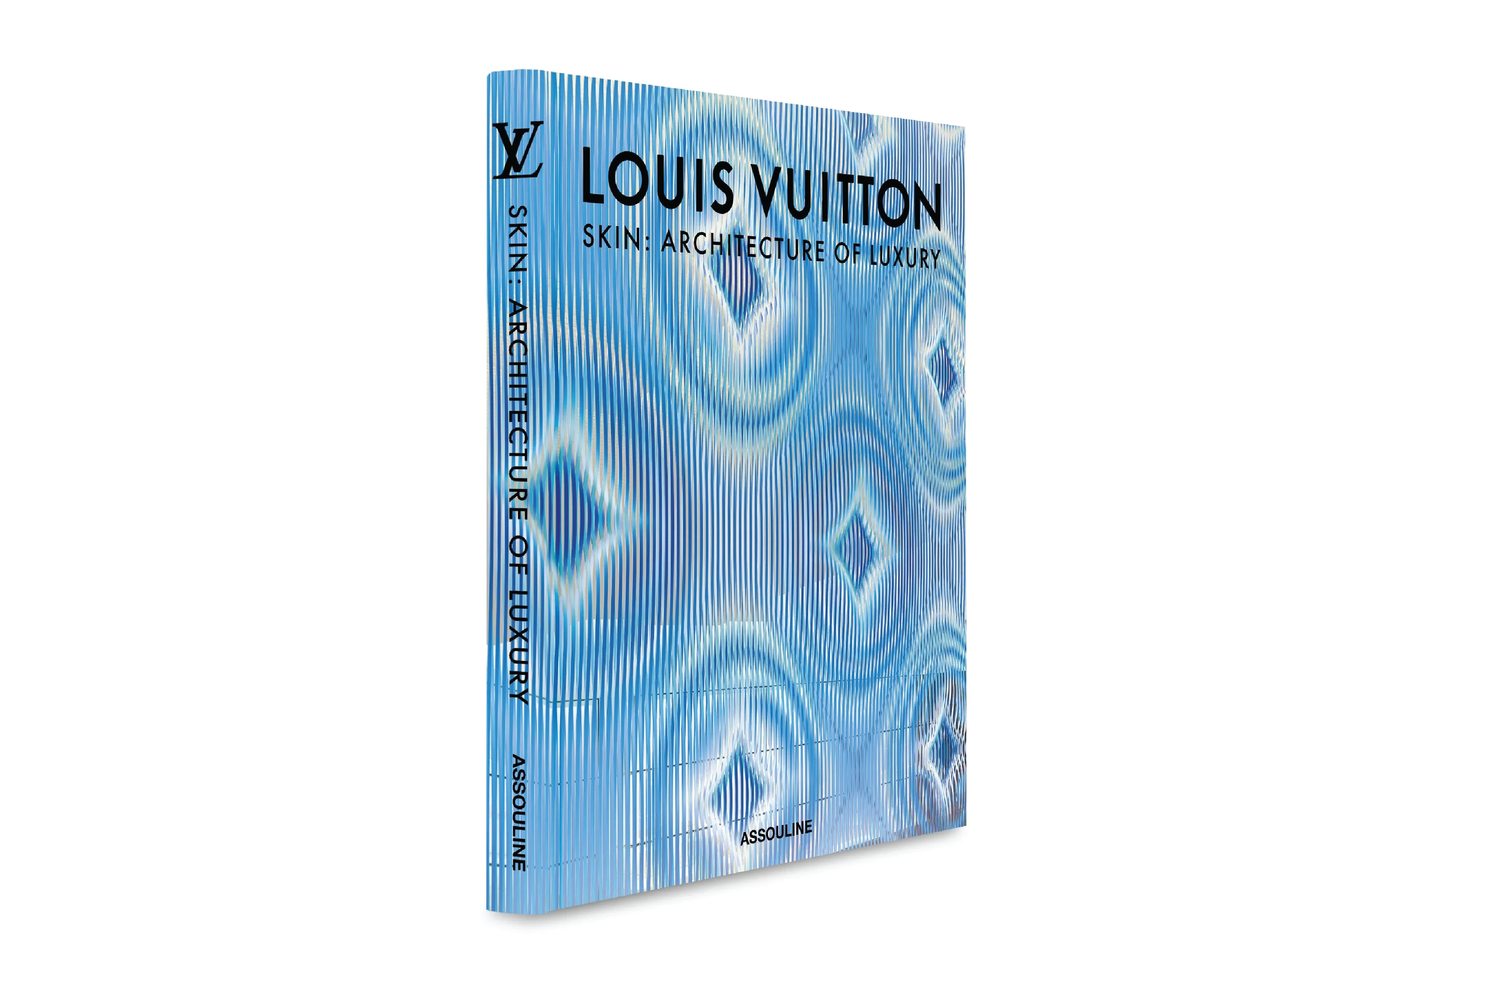 Assouline Publishing Louis Vuitton Book